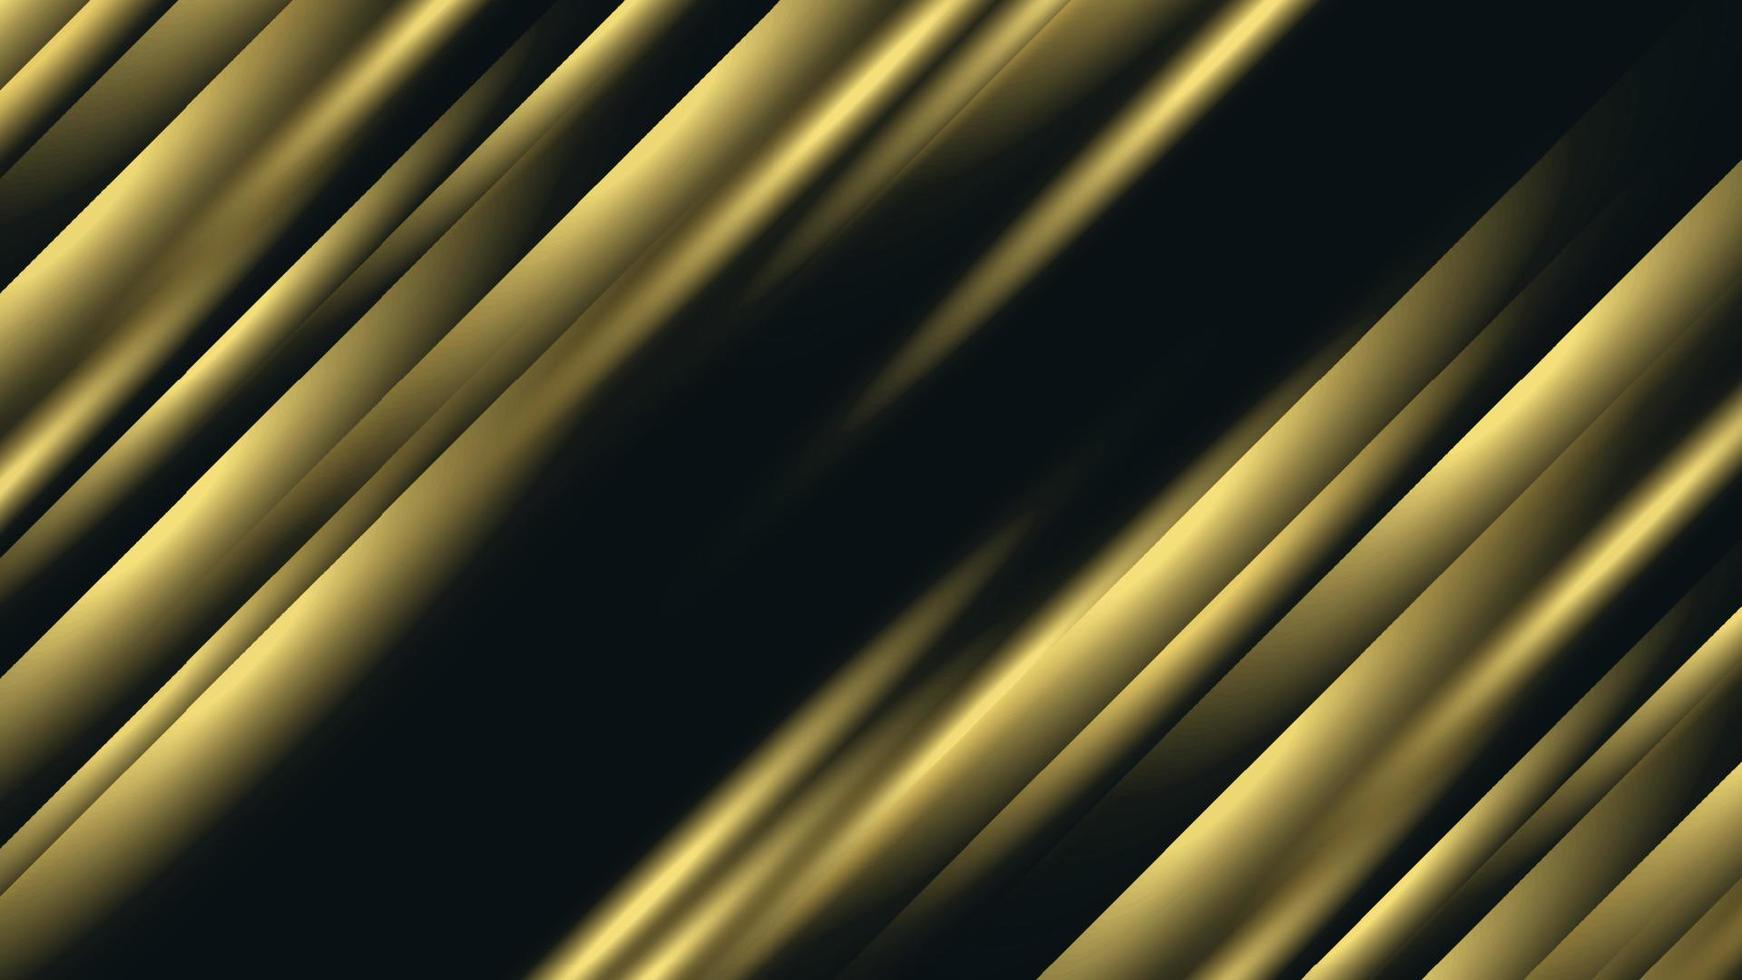 vorlagen metall textur weich linien tech diagonal hintergrund gold dunkel glatt sauber modern. vektor